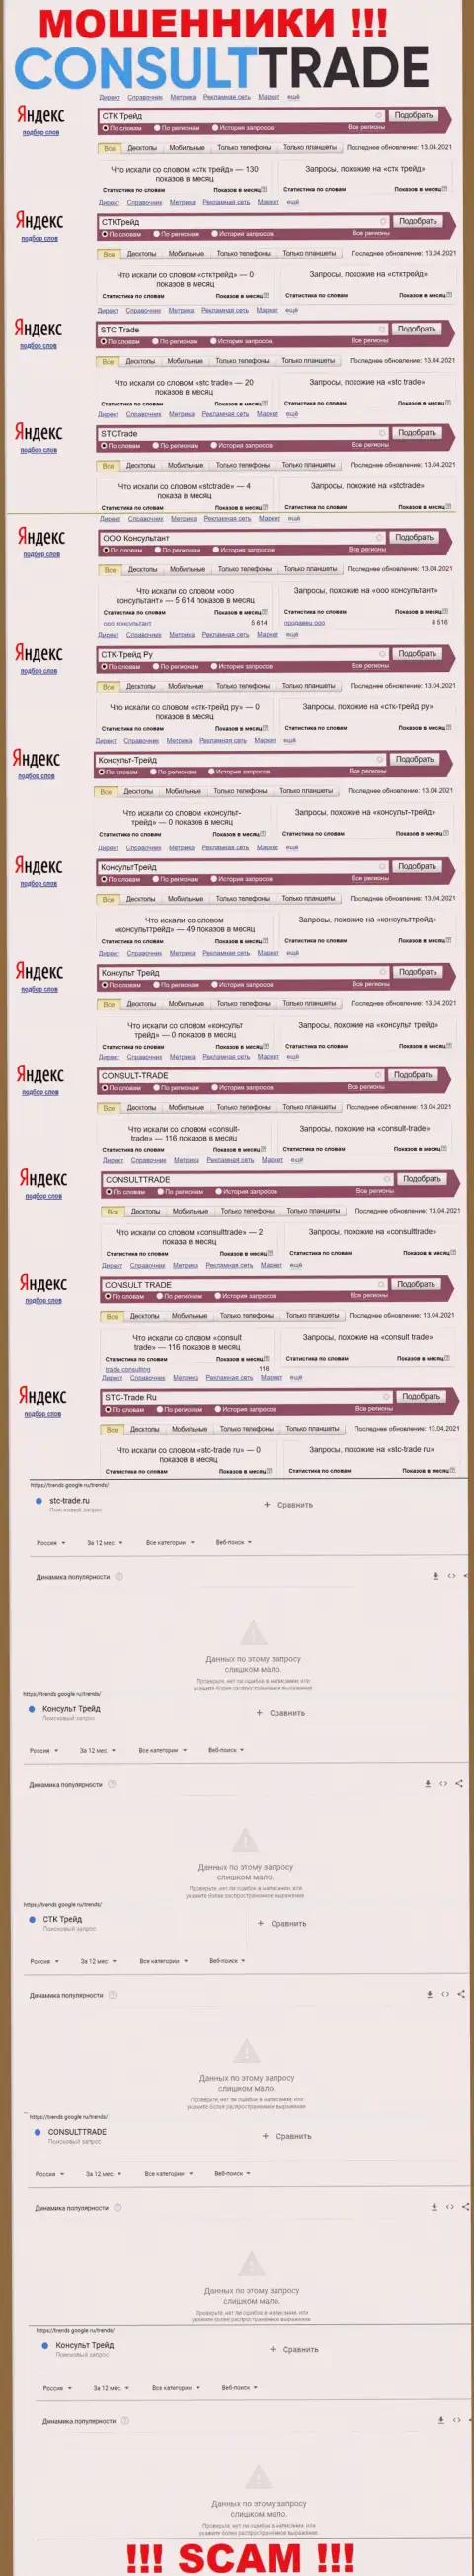 Скрин результатов online запросов по незаконно действующей компании СТК Трейд